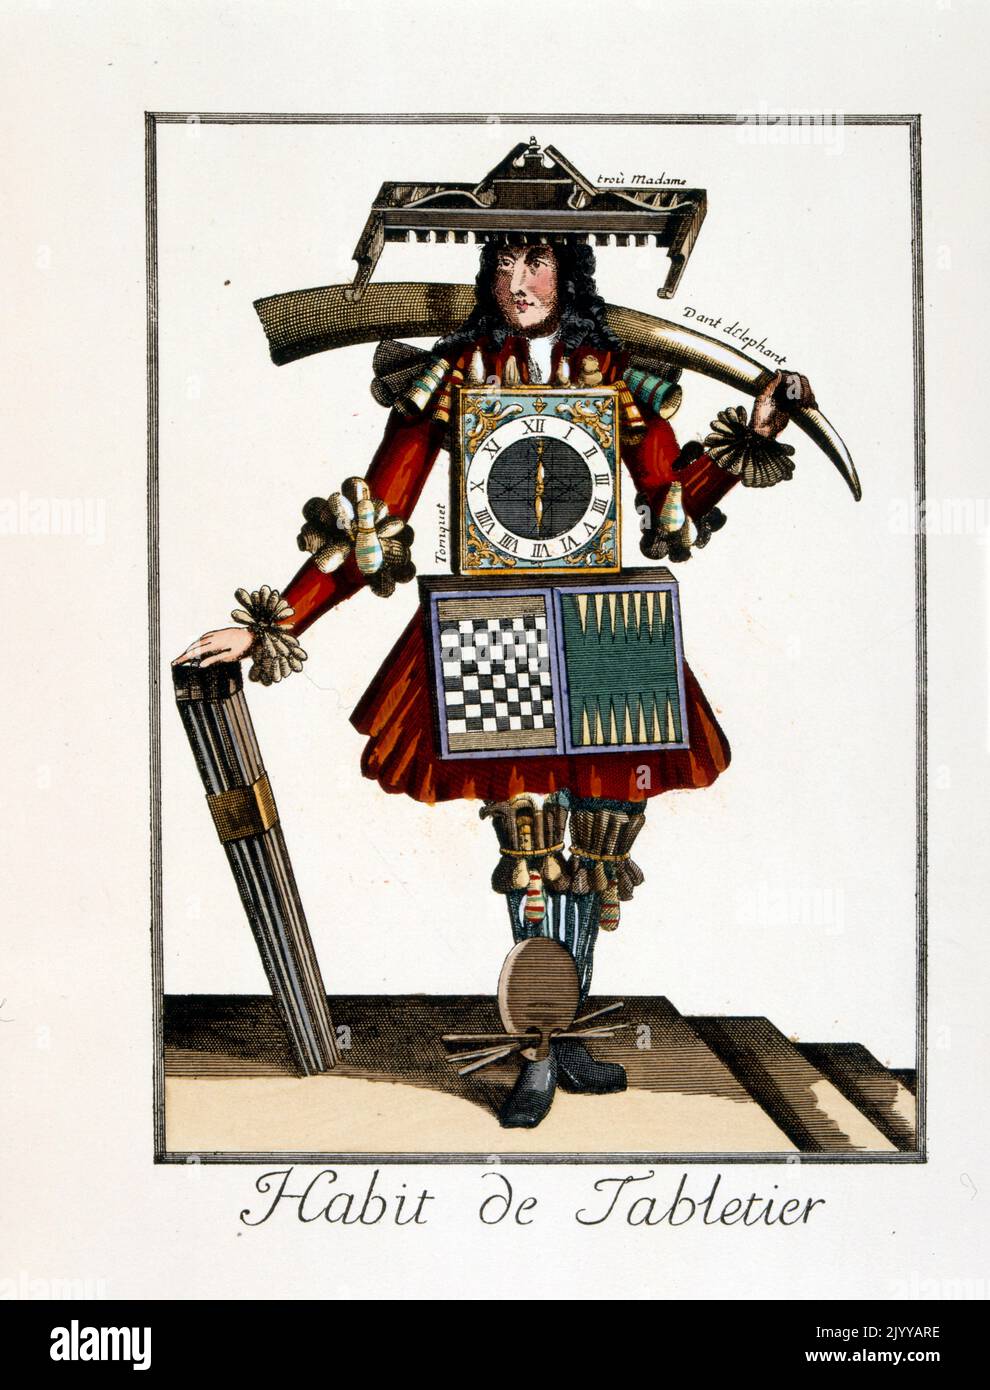 Farbige Abbildung eines Mannes, der ein Outfit eines Spielzeugherstellers für ein Brettspiel mit dem Titel „Habit de Tabletier“ trägt. Stockfoto